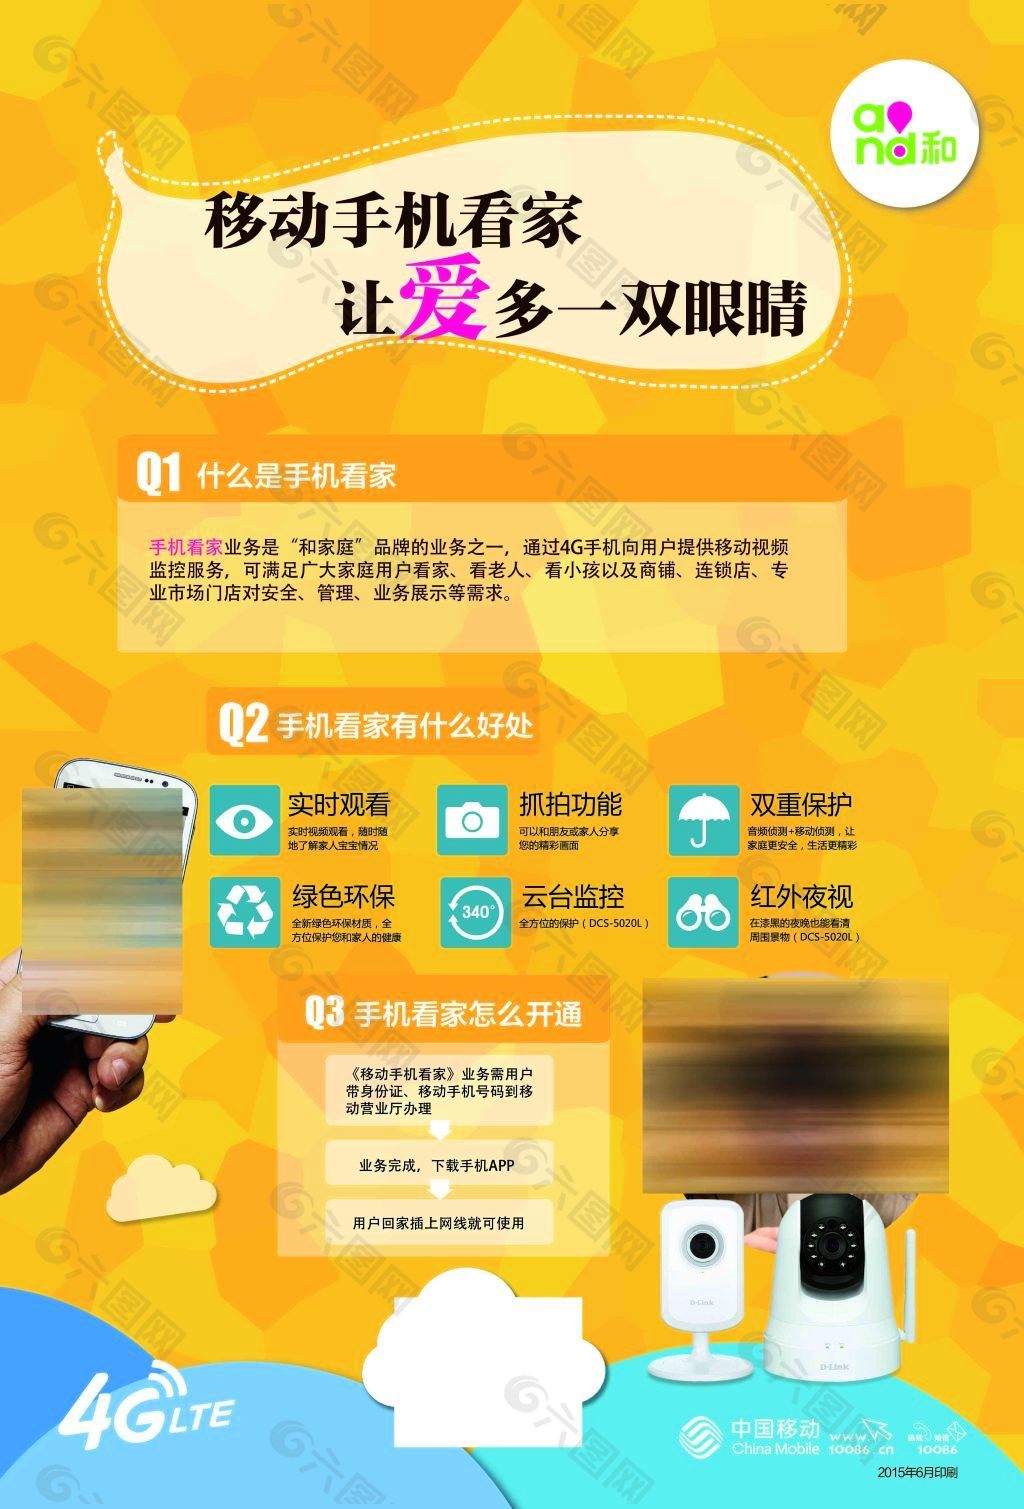 中国移动手机看家海报